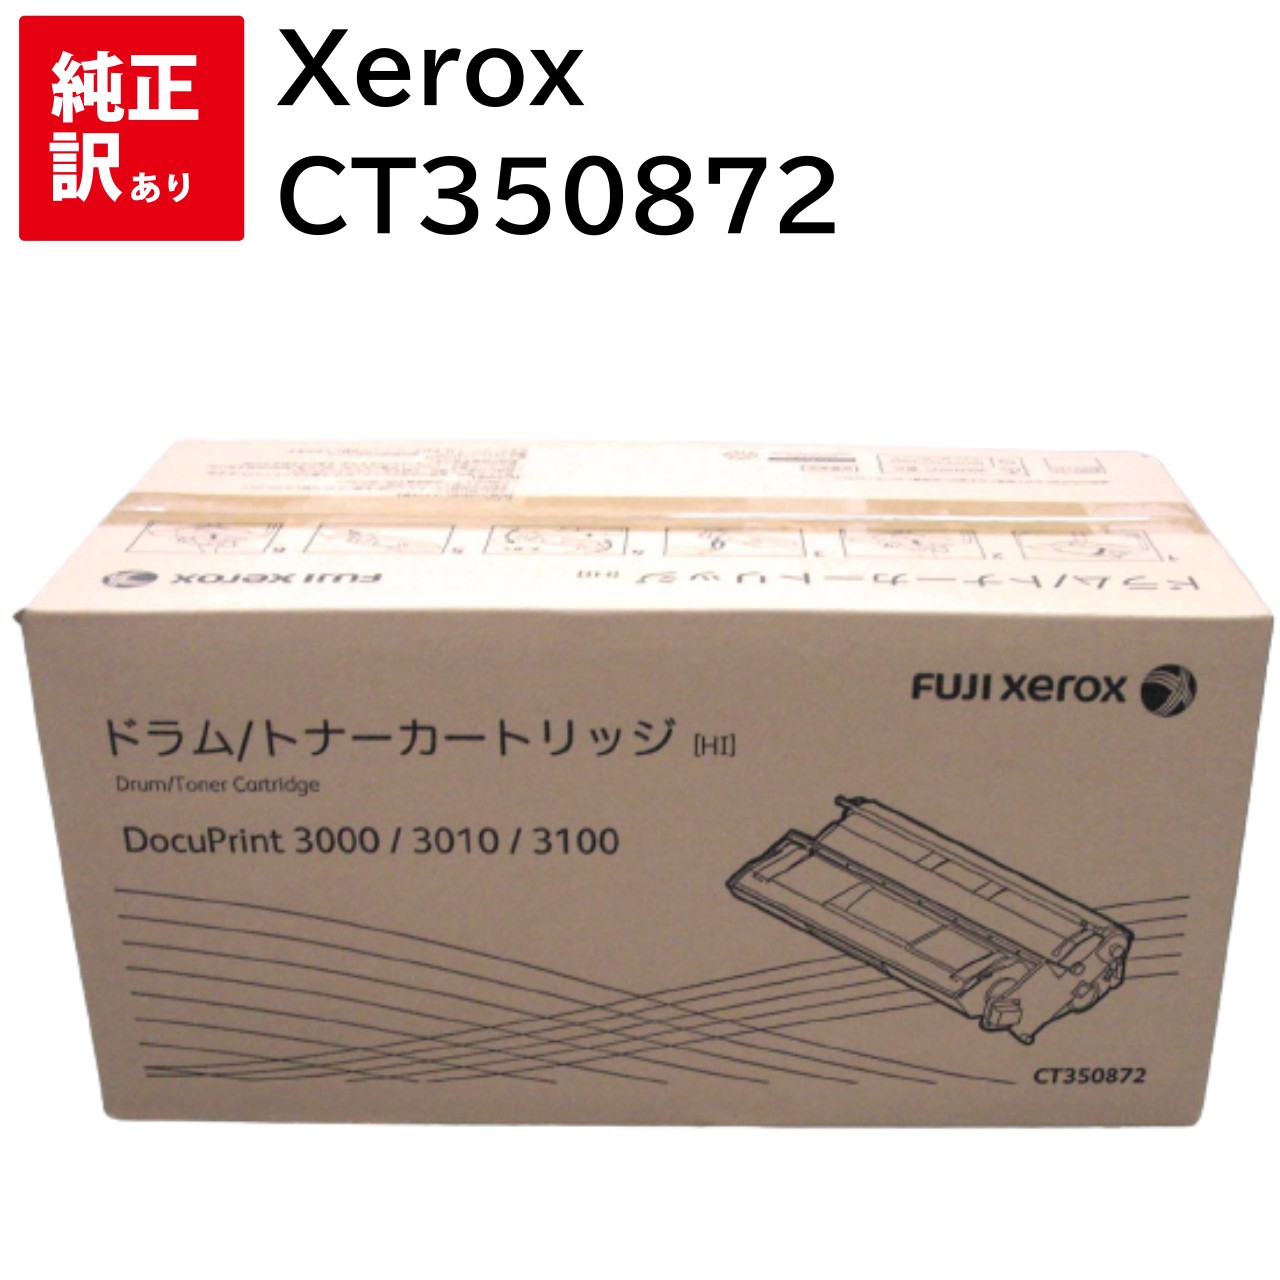 訳あり 新品 ゼロックス Xerox CT350872 純正 ドラム トナー カートリッジ 送料無料 4982012813518 DocuPrint 3100 / 3000 トナー